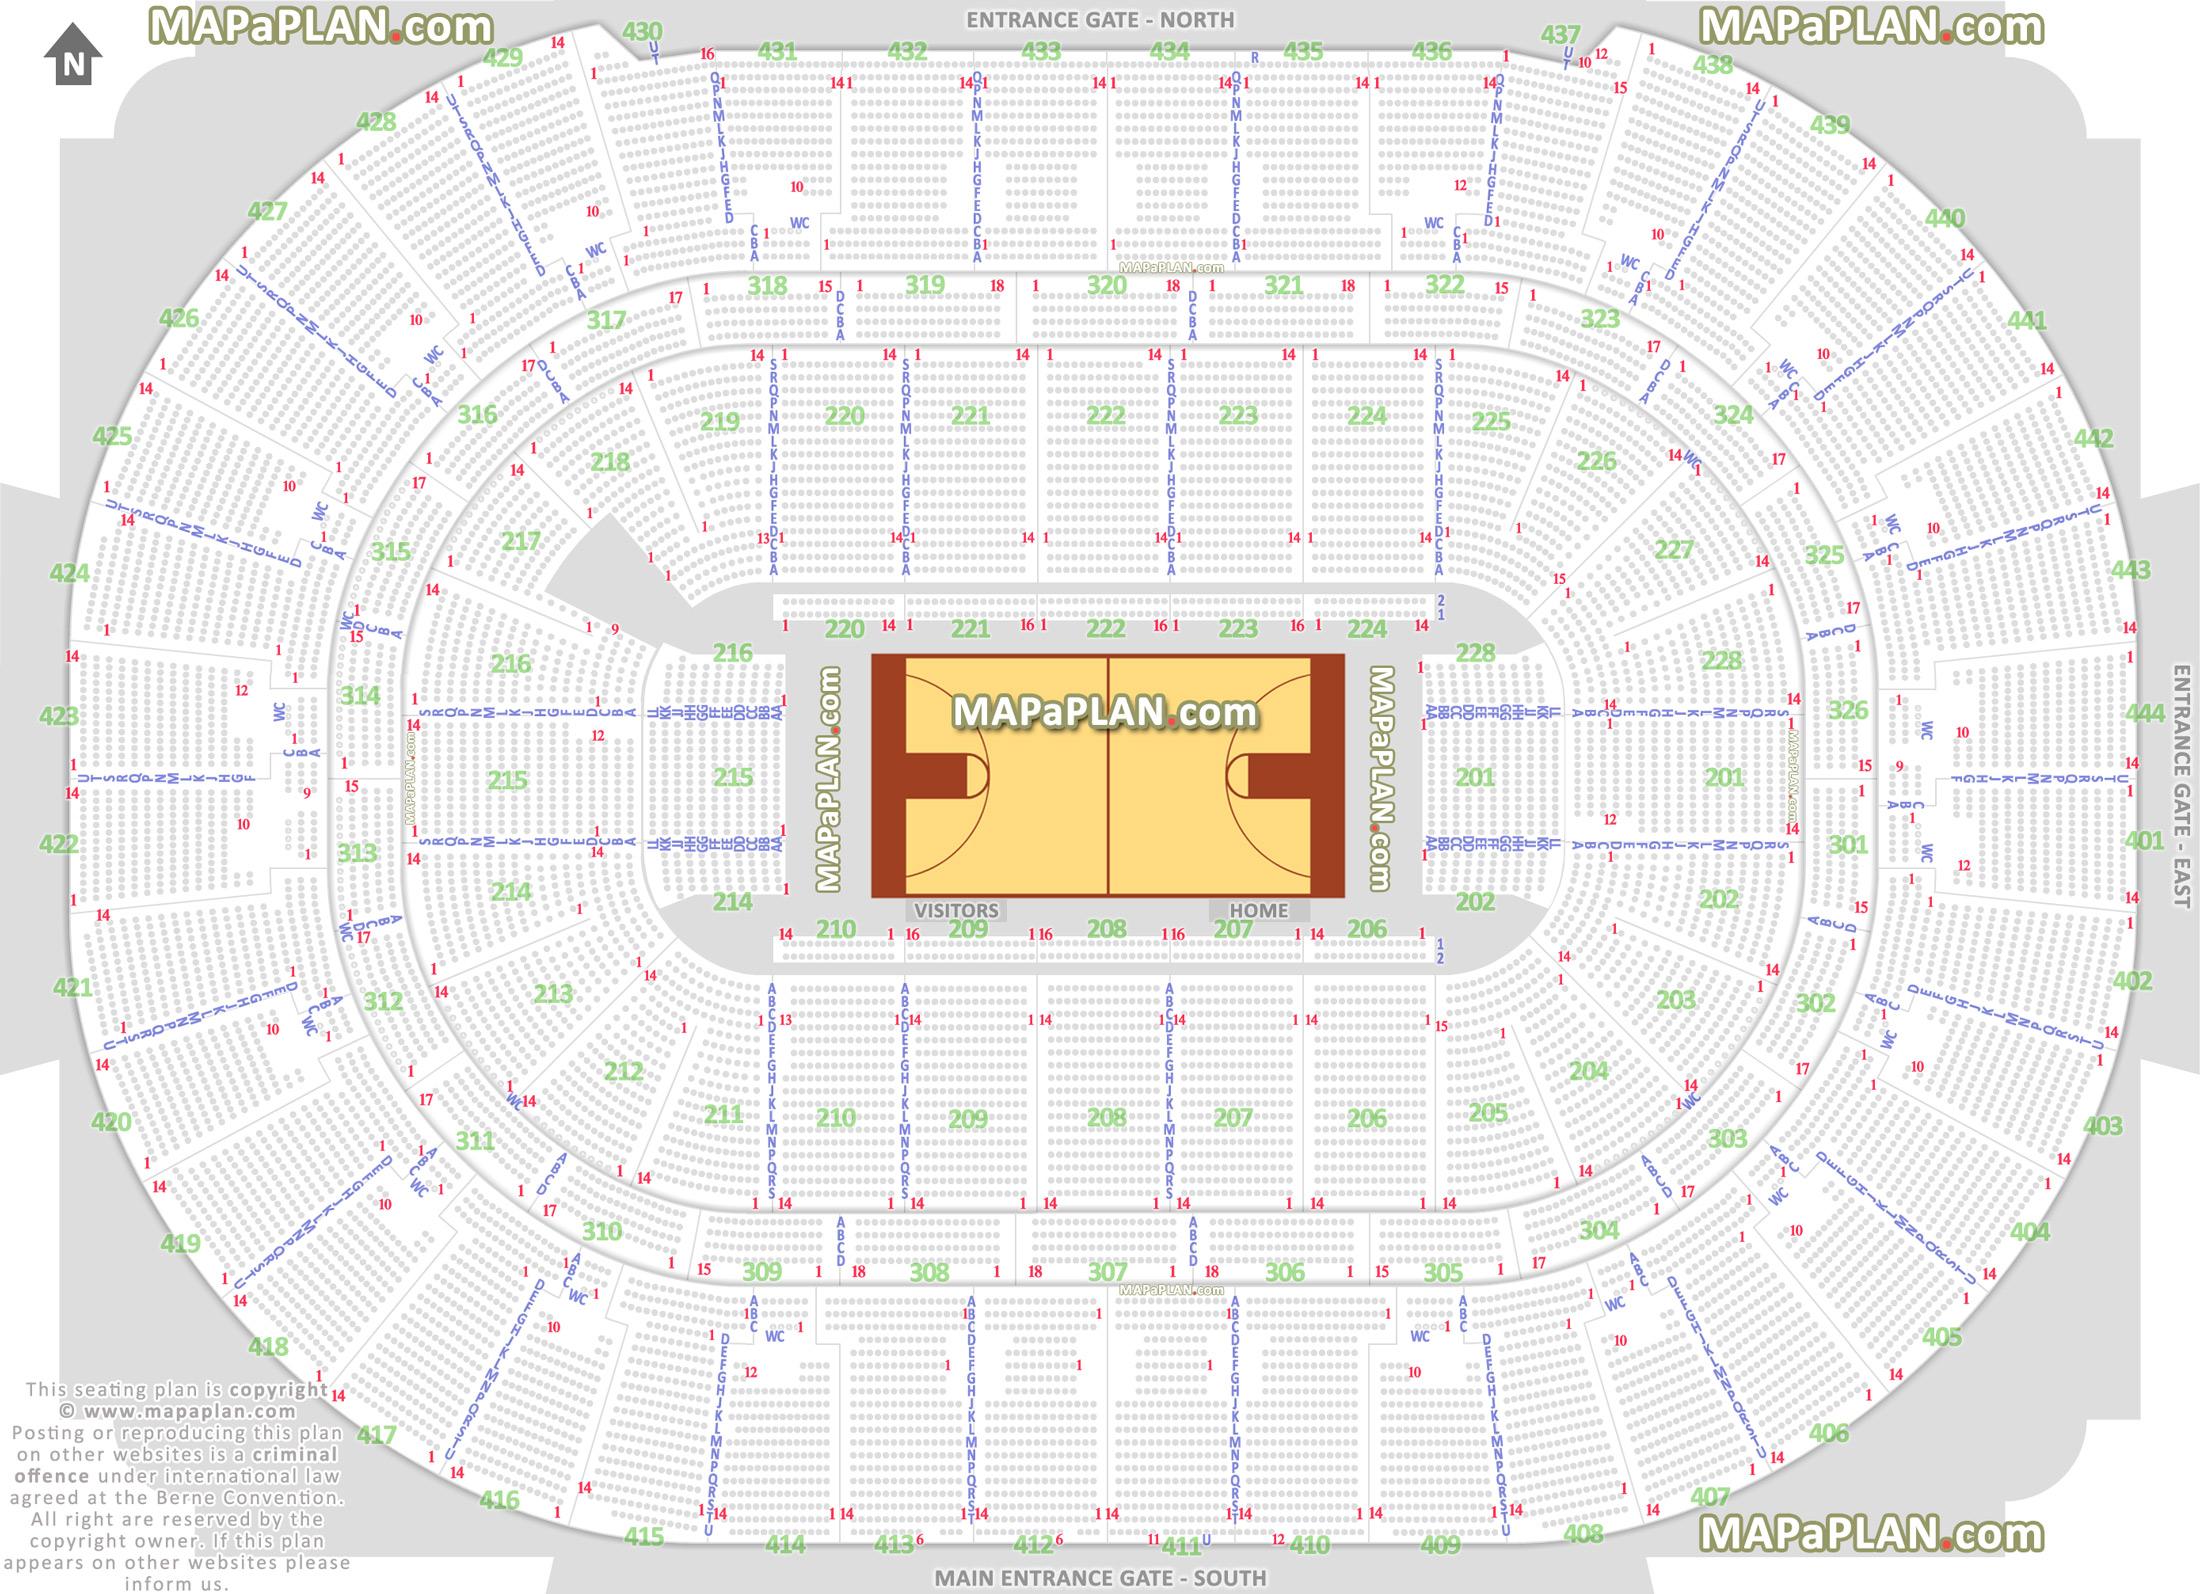 Legacy Arena Seating Chart Basketball